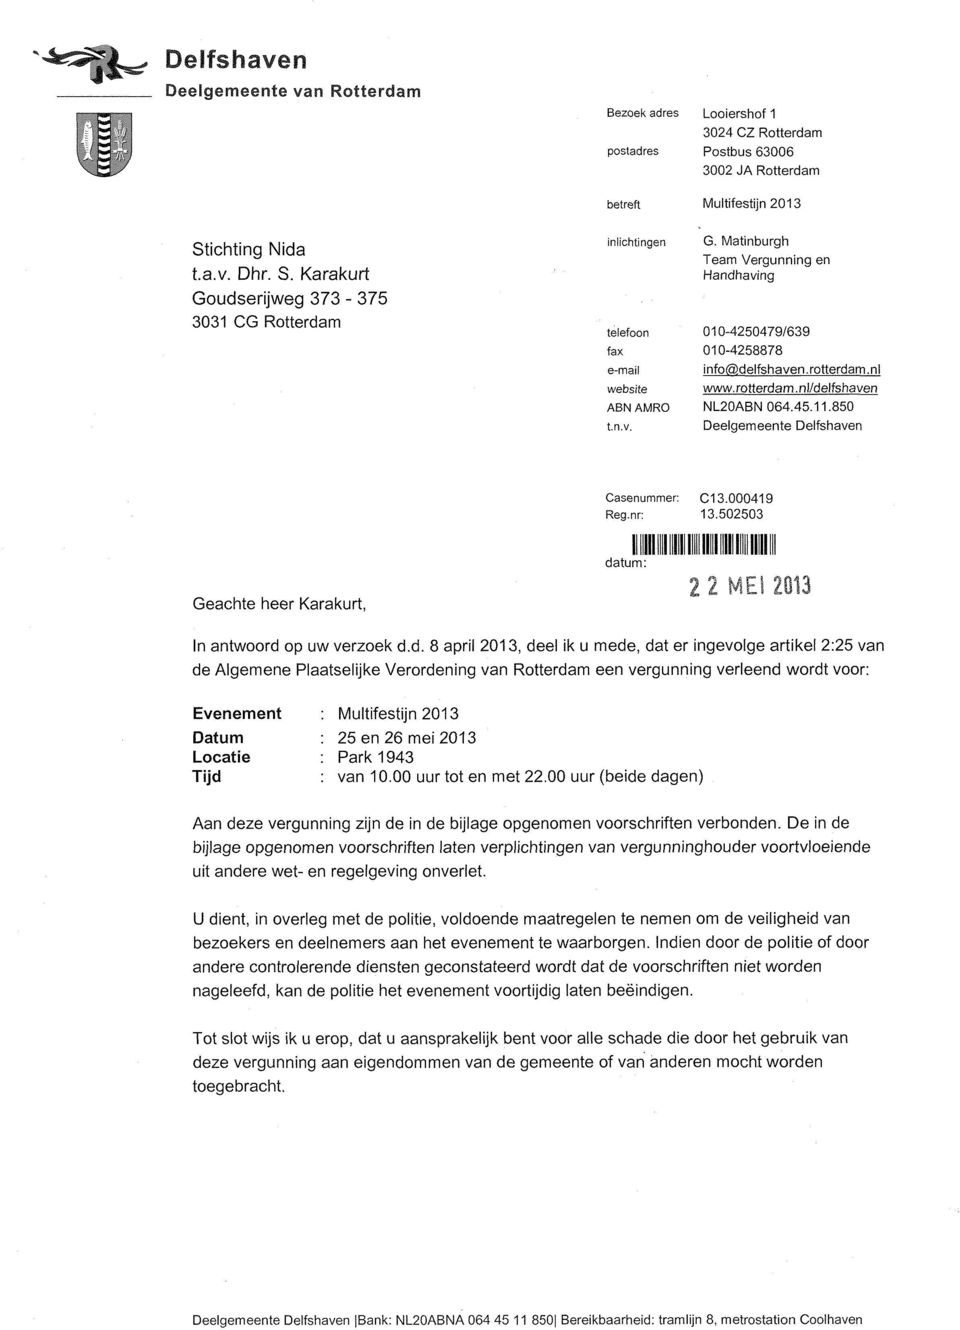 rotterdam.nl/delfshaven NL20ABN 064.45.11.850 Deelgemeente Delfshaven Geachte heer Karakurt, Casenummer: C13.000419 Reg.nr: 13.502503 Mil MN IIII!Mil! datum: 2 2 MES 2013 In antwoord op uw verzoek d.